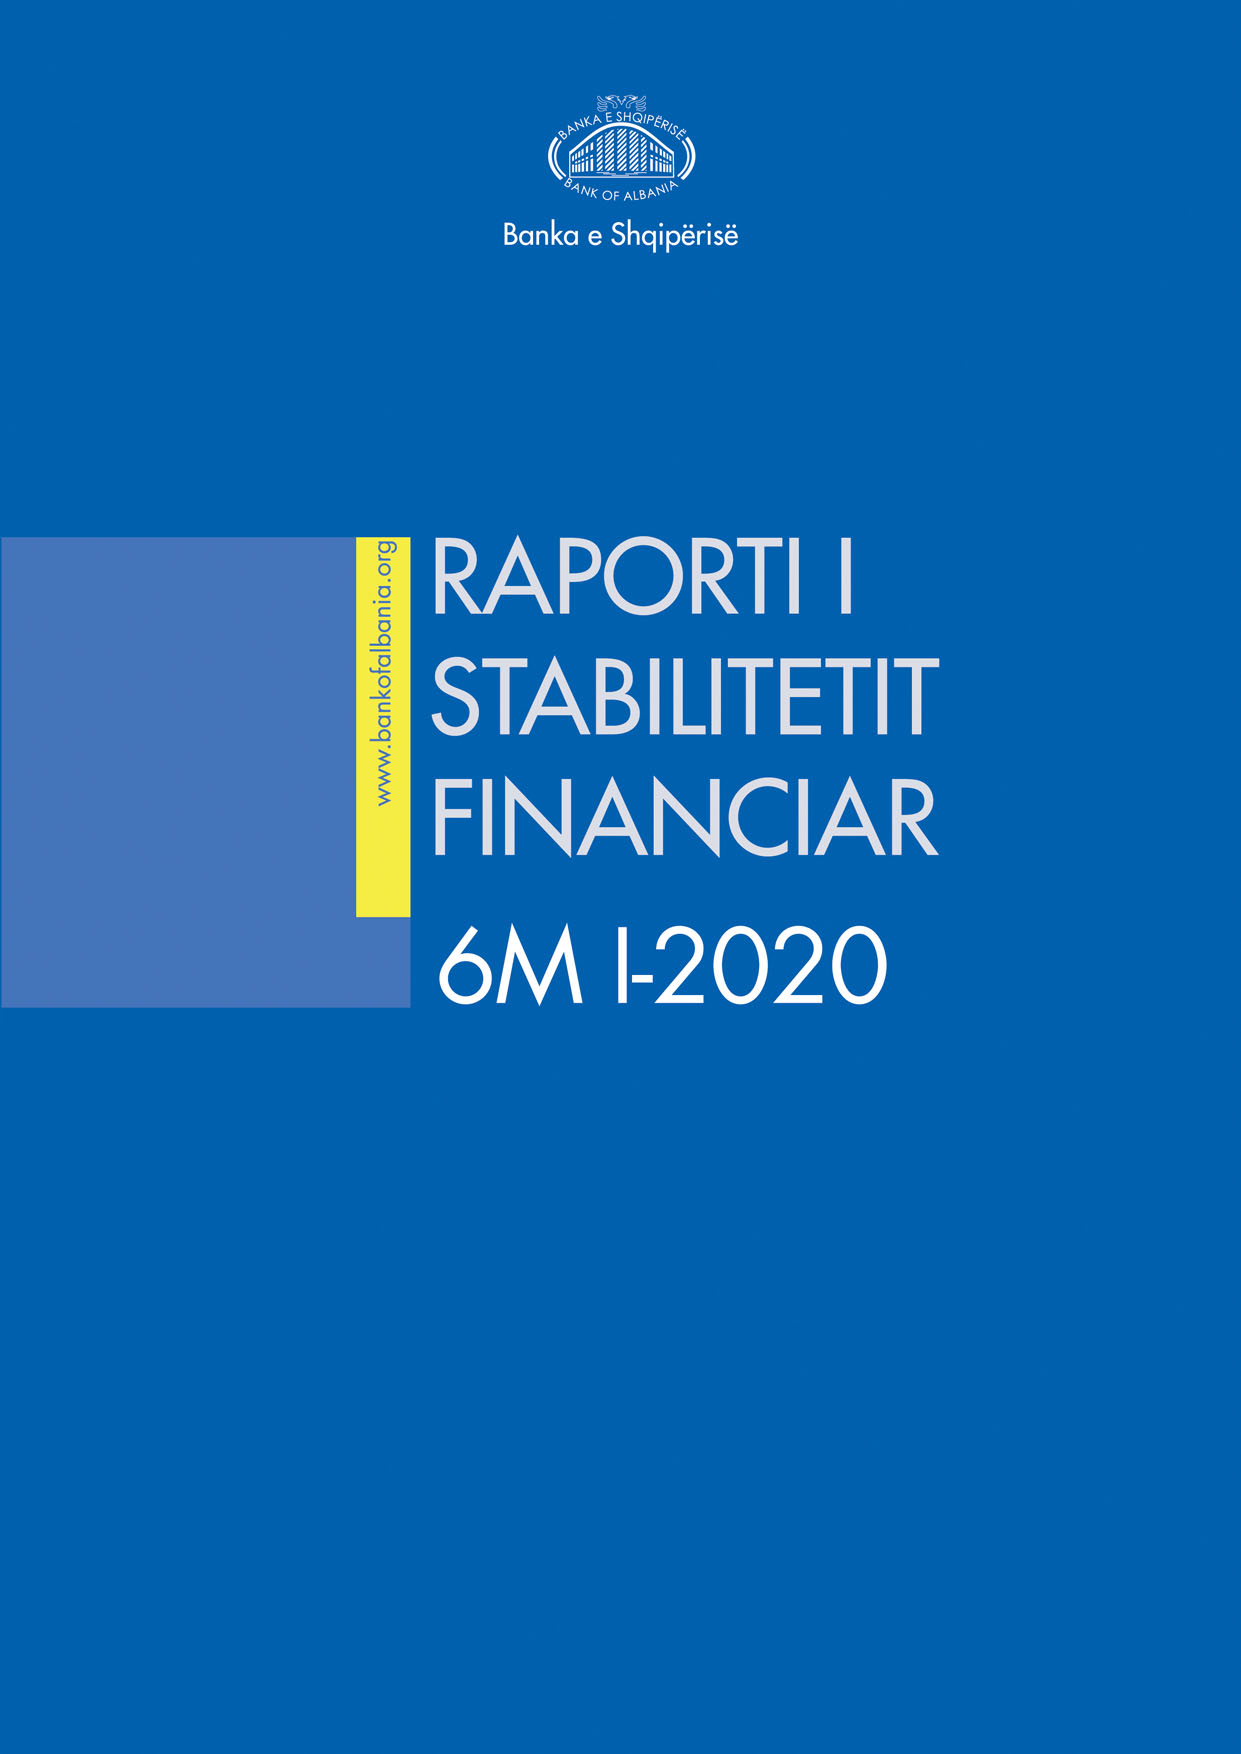 Raporti i Stabilitetit Financiar për gjashtëmujorin e parë të vitit 2020